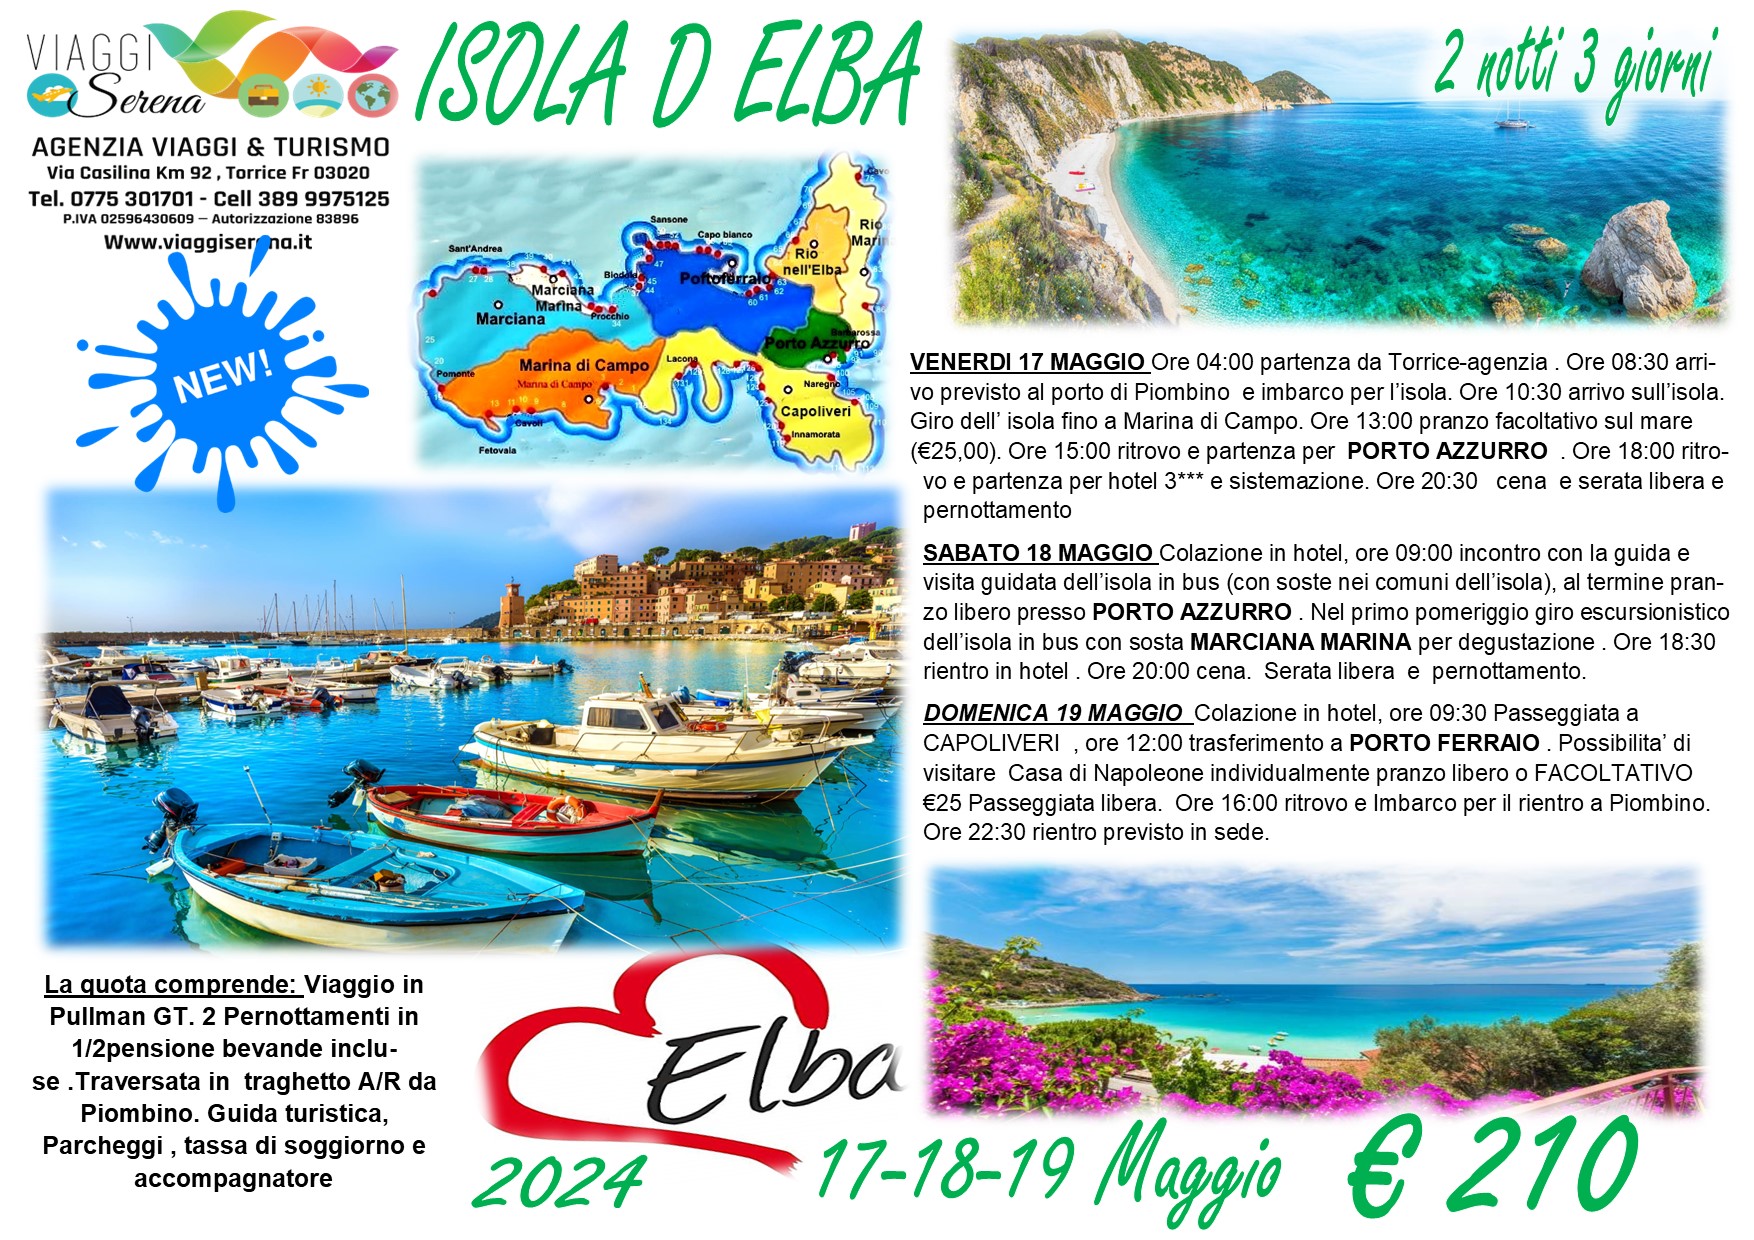 Viaggi di gruppo: Isola d’Elba & i suoi Comuni 17-18-19 Maggio €210,00